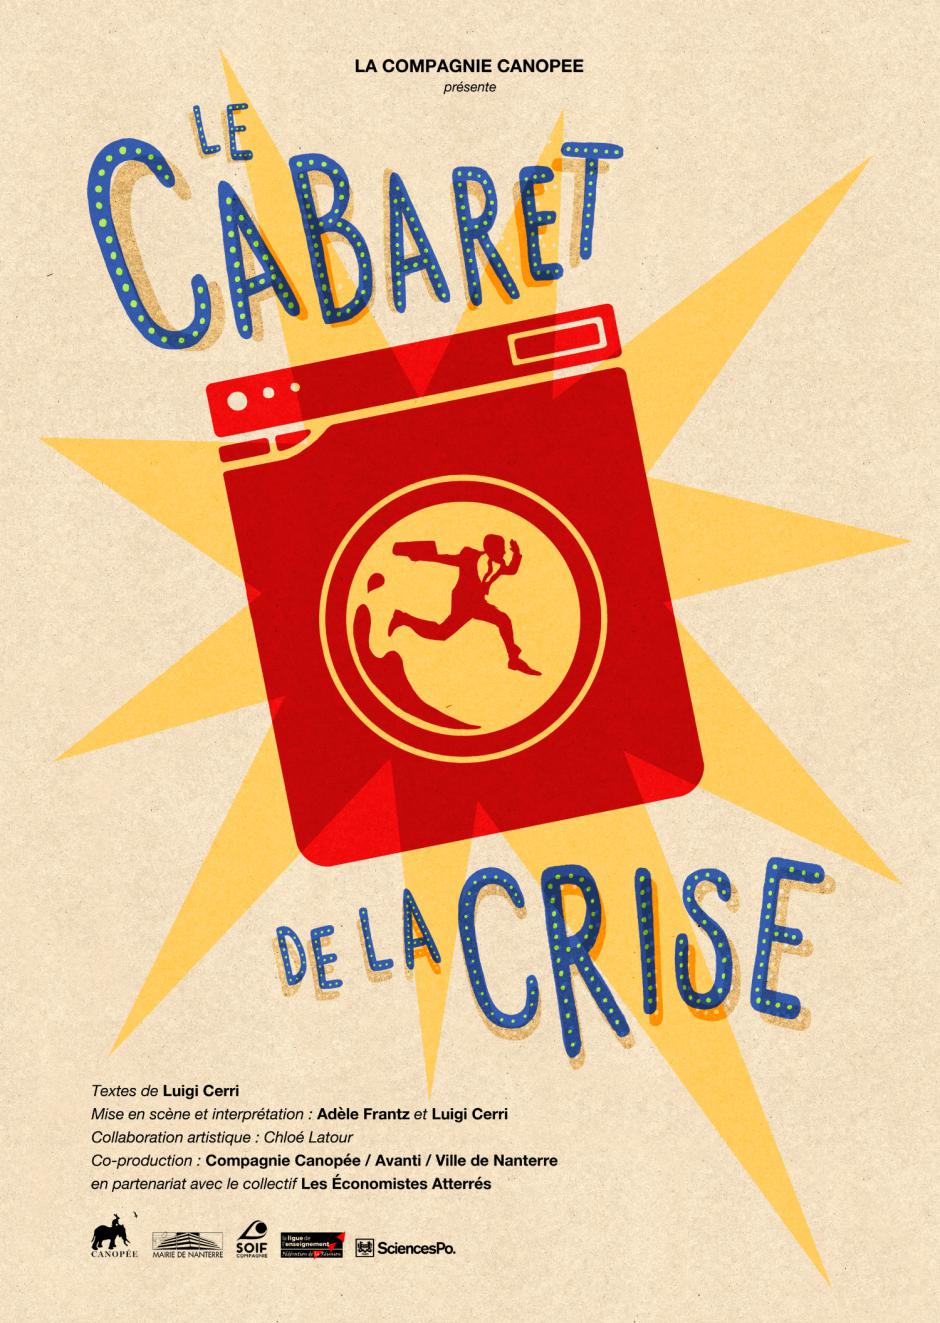 Les prochaines dates du Cabaret de la crise par la compagnie Canopée